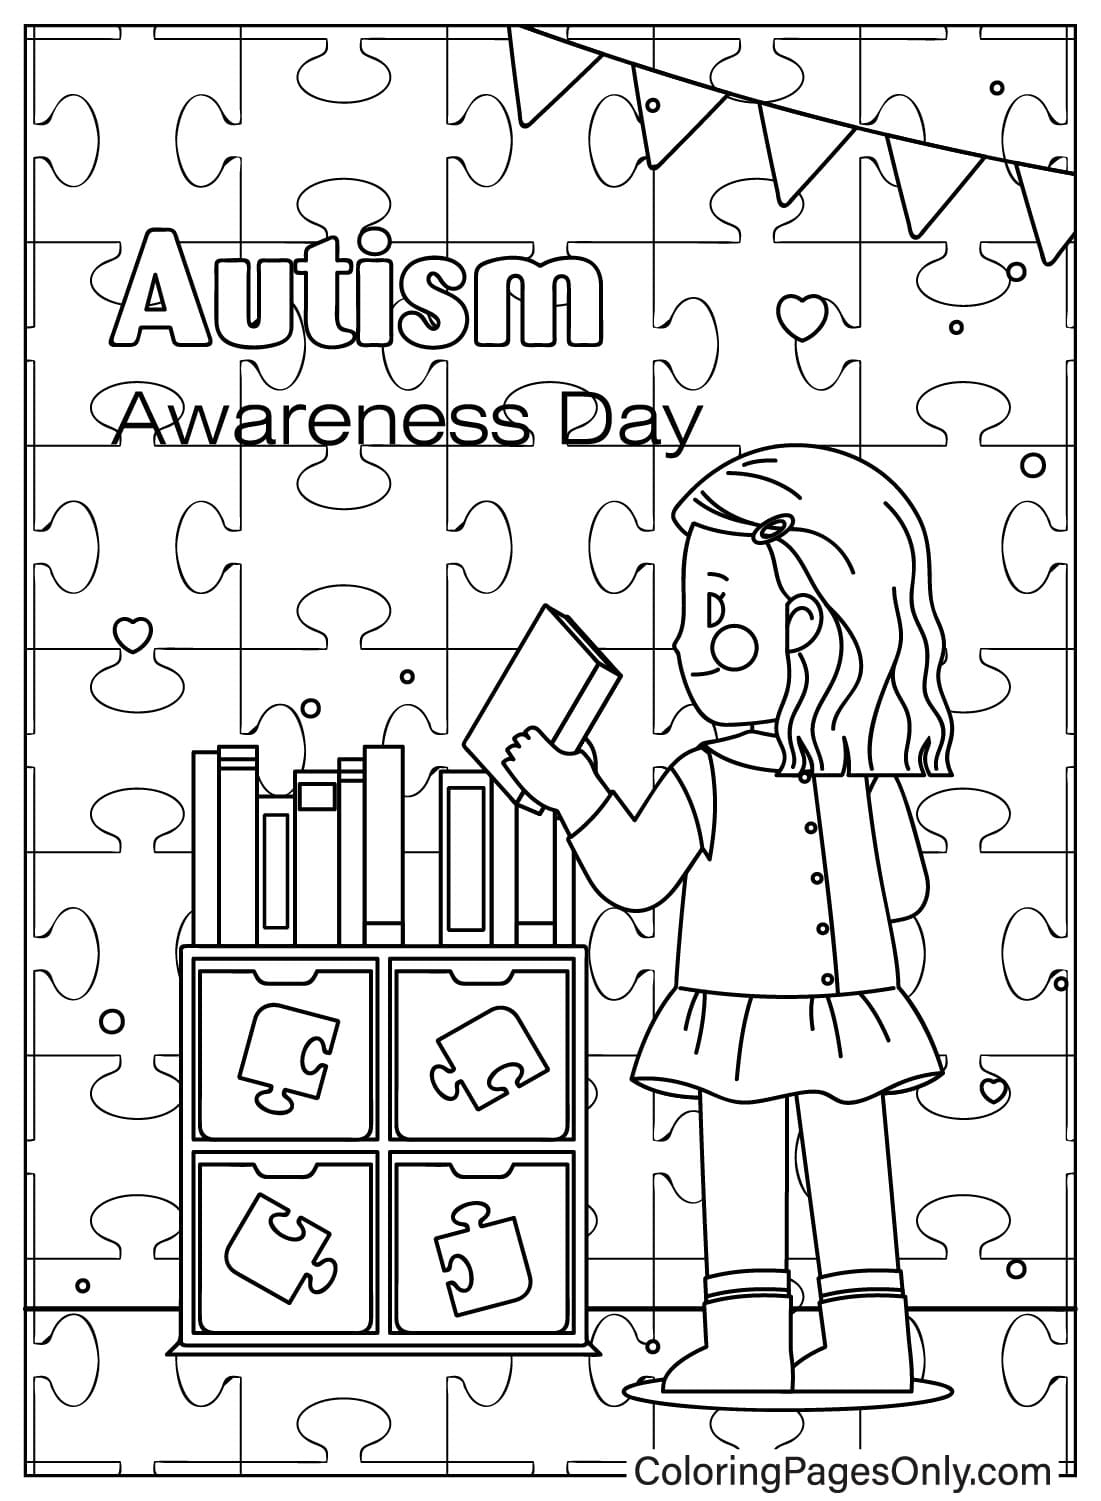 Malvorlage zum Thema Autismus-Bewusstsein für Kinder vom Welt-Autismus-Bewusstseinstag